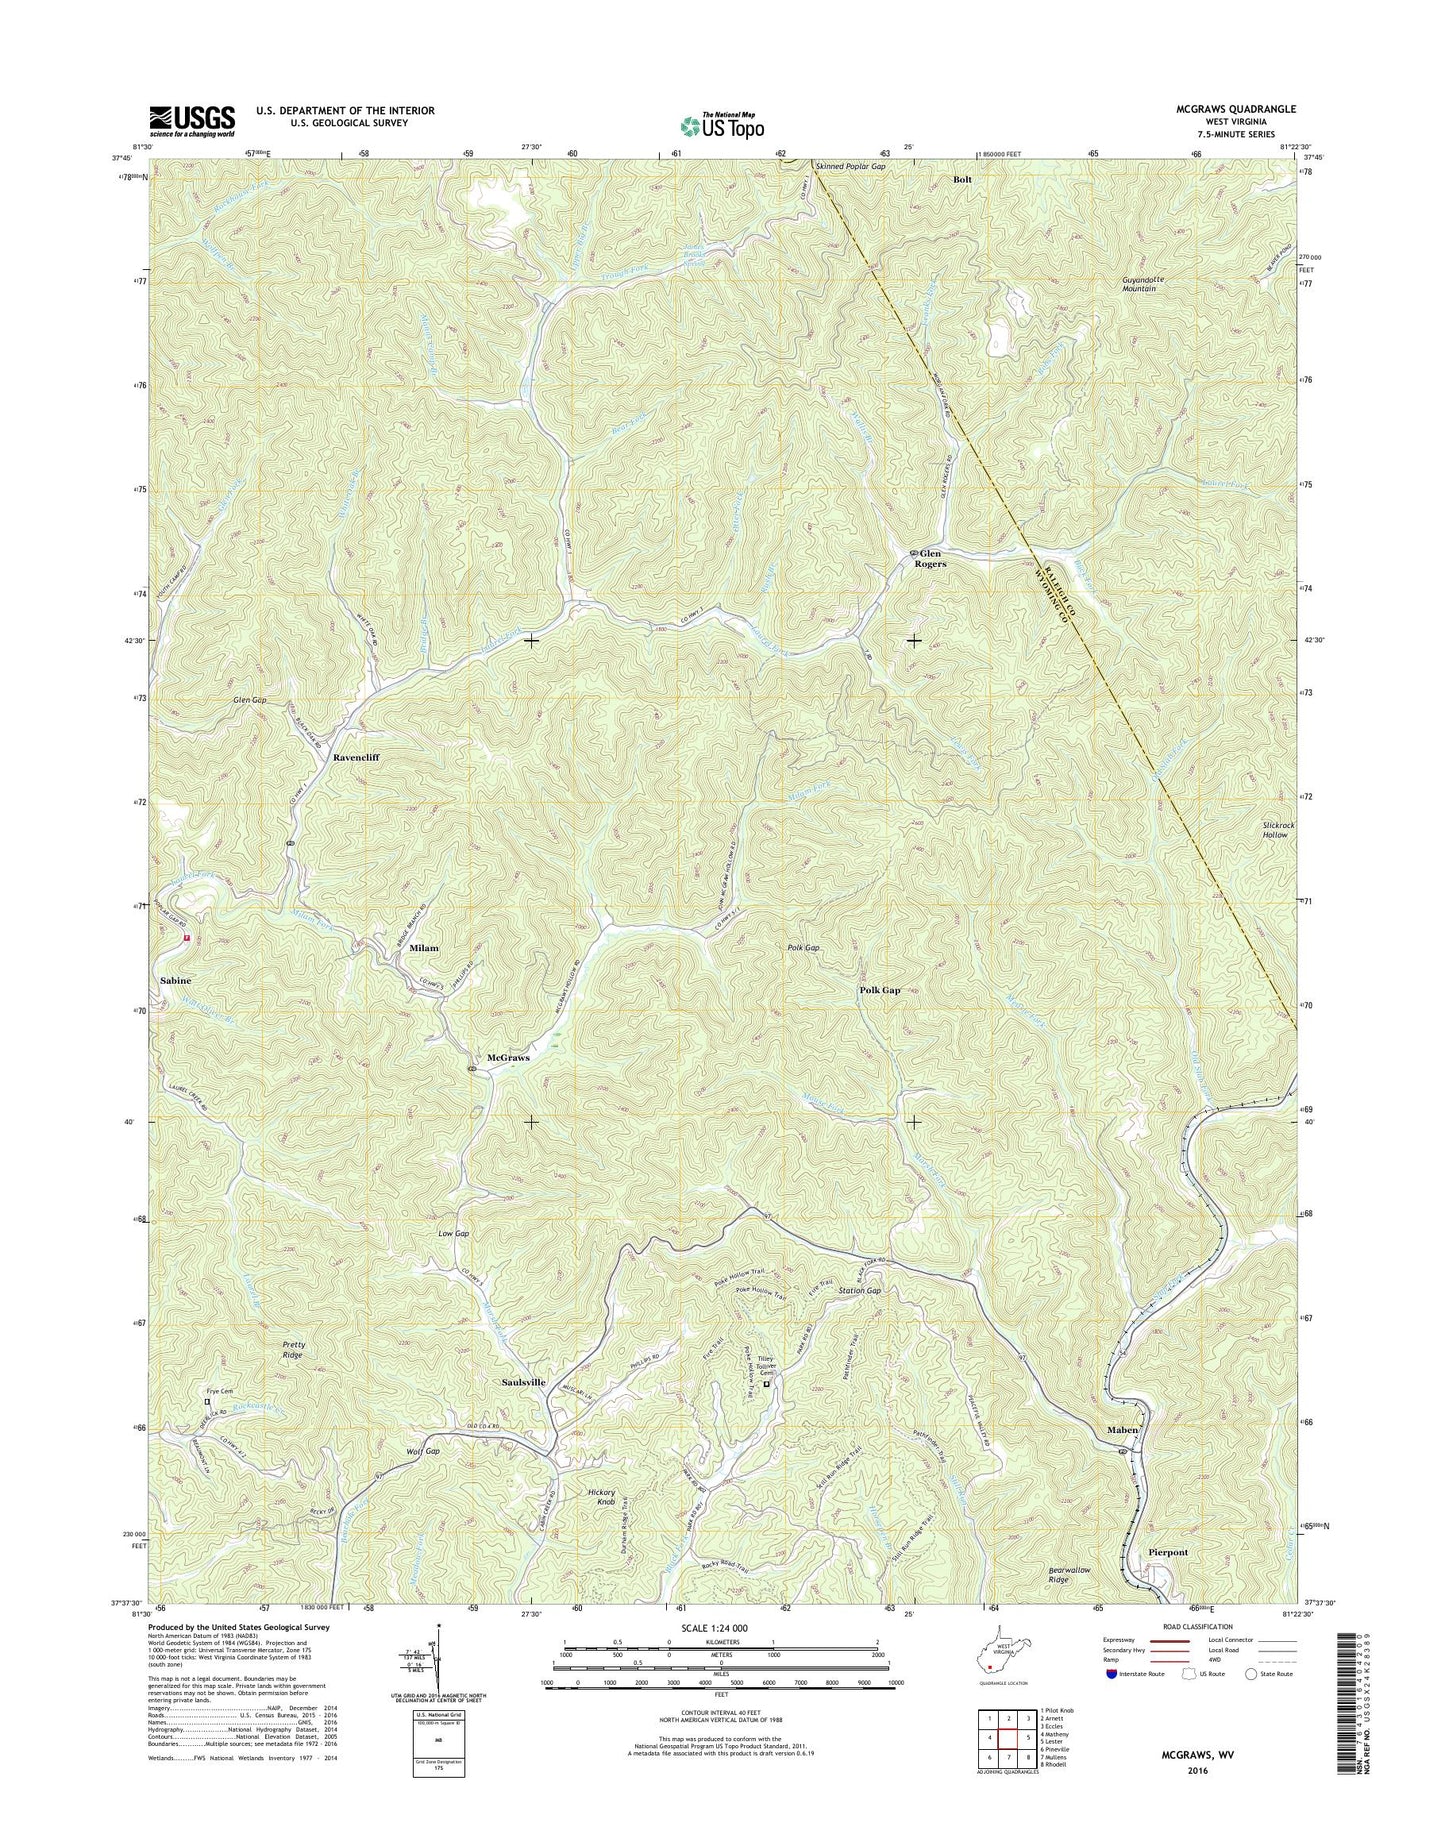 McGraws West Virginia US Topo Map Image